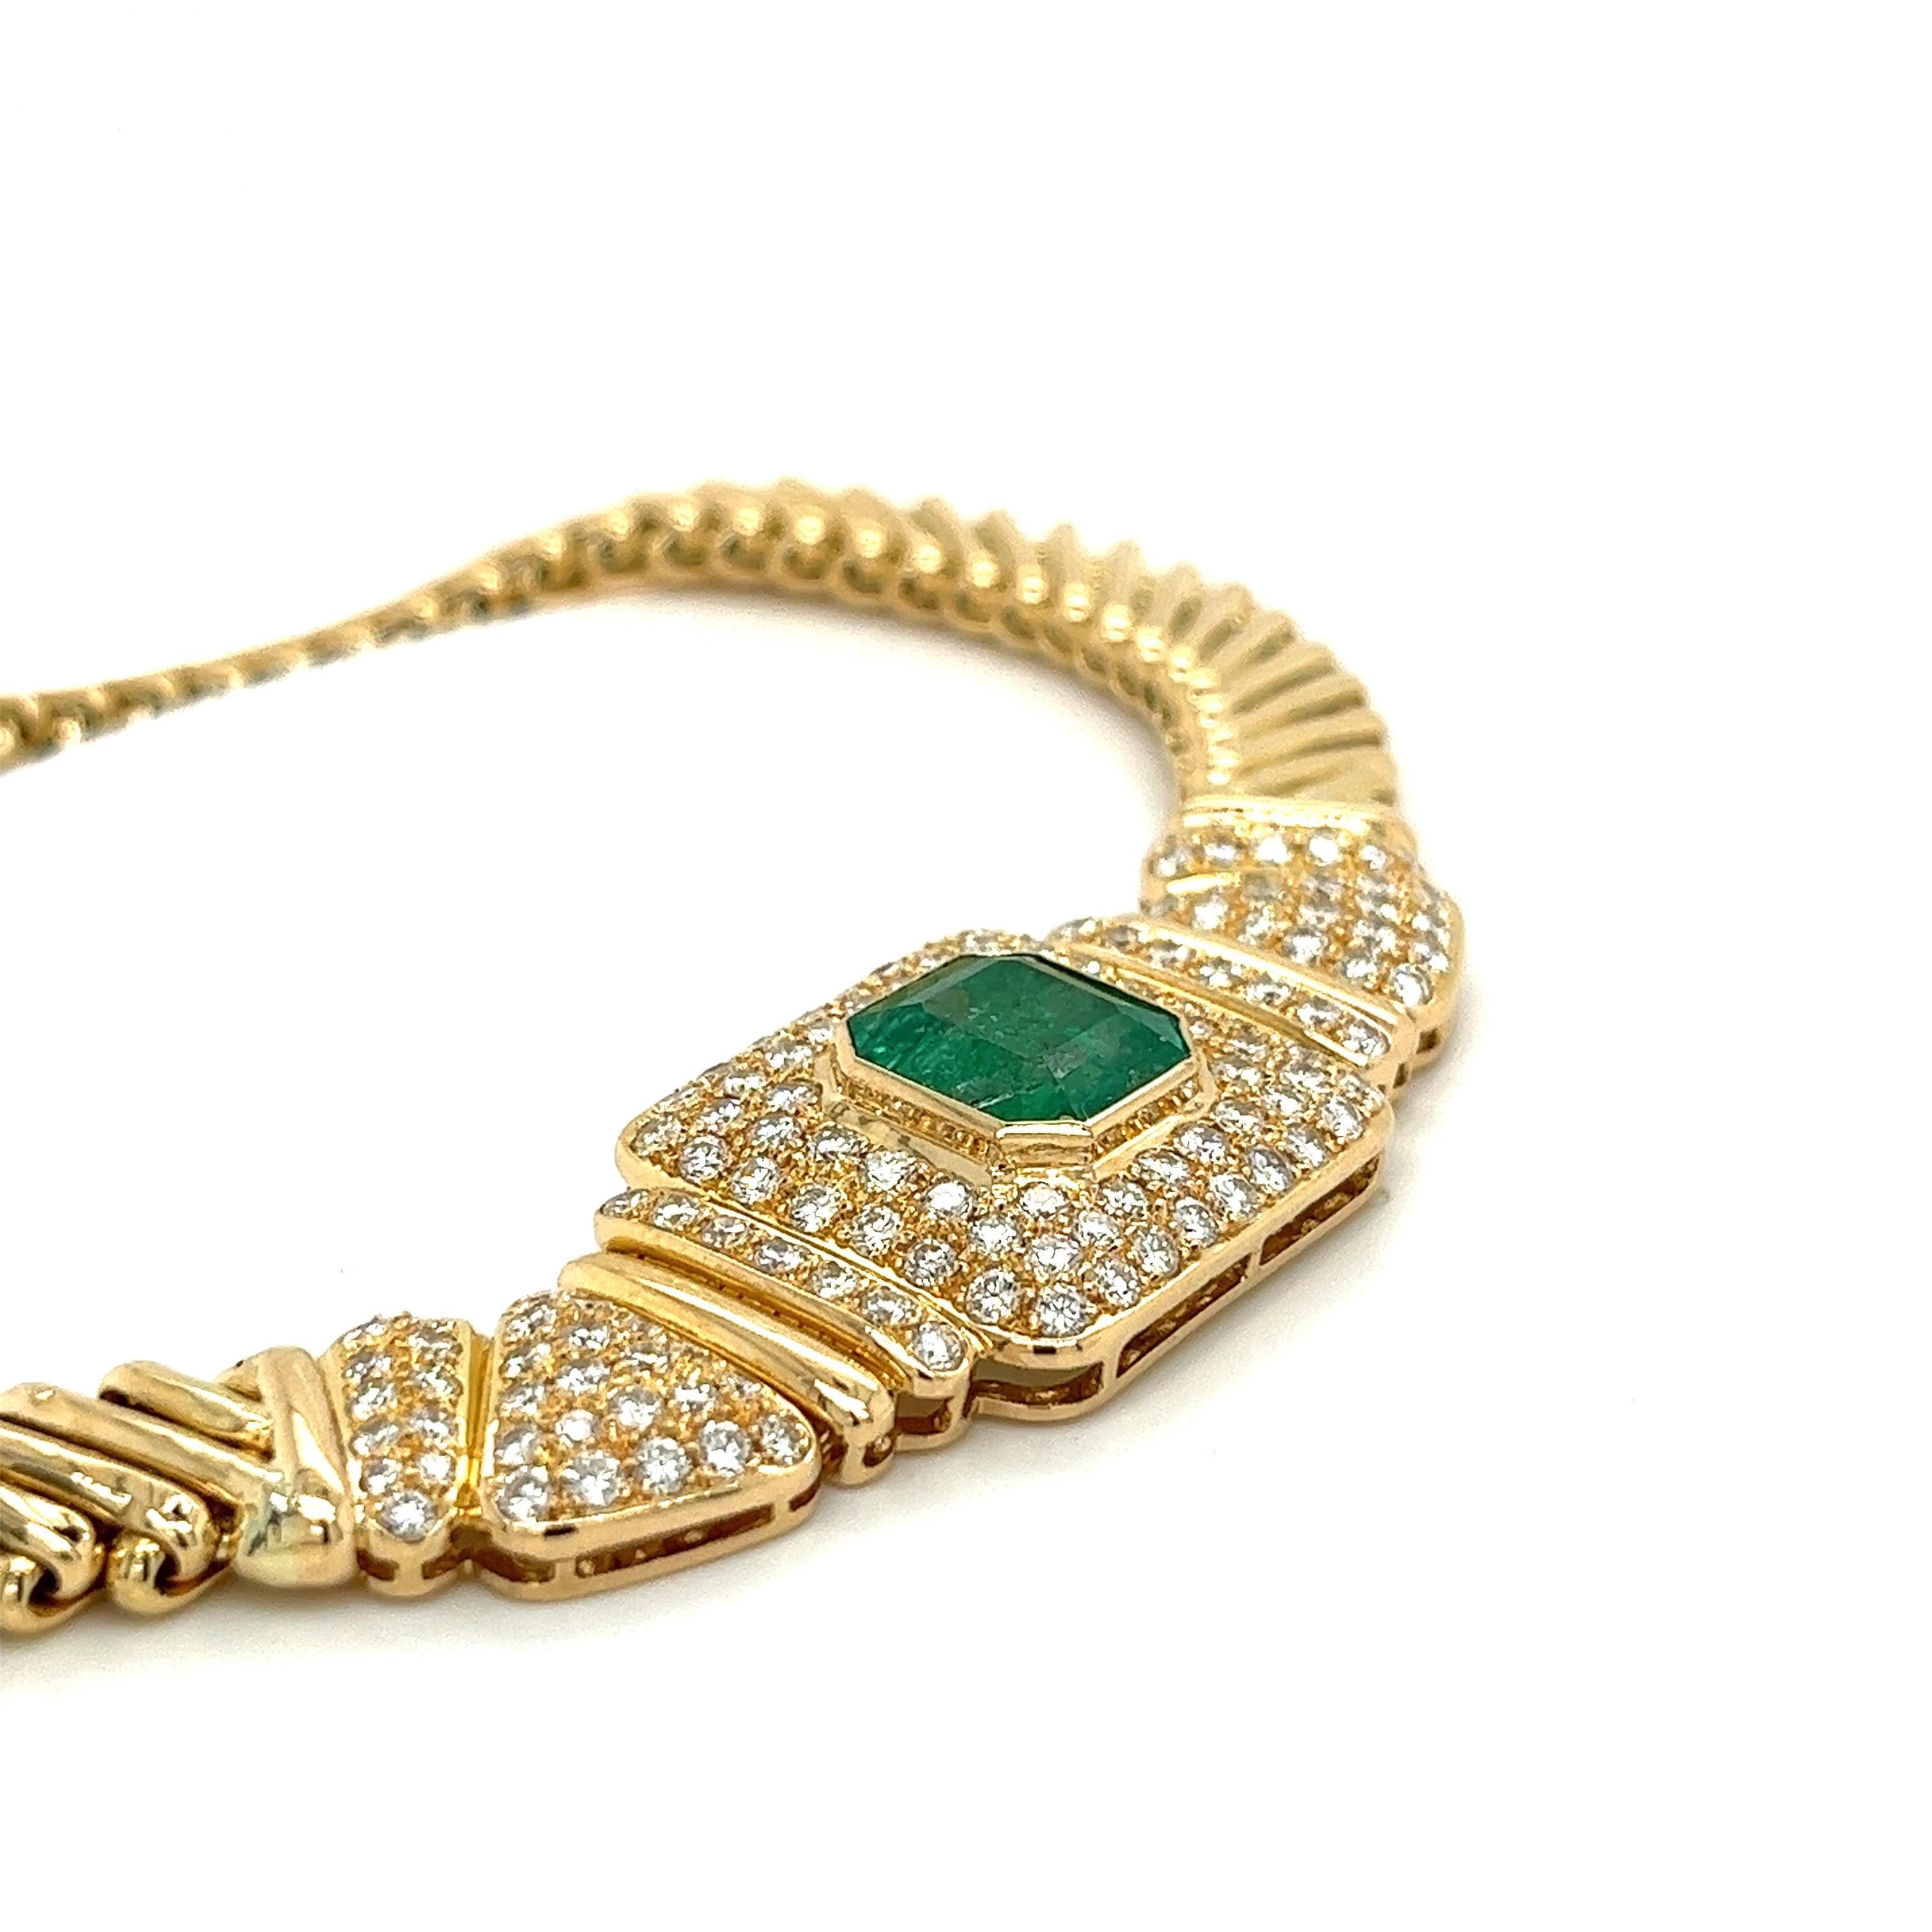 Ein 6-karätiger natürlicher kolumbianischer Smaragd in der Mitte, akzentuiert von 60 echten Diamanten im Rundschliff, ziert diese atemberaubende Halskette für Damen. Eingefasst in eine flache Gliederkette aus 18 Karat Gelbgold, die schön am Hals